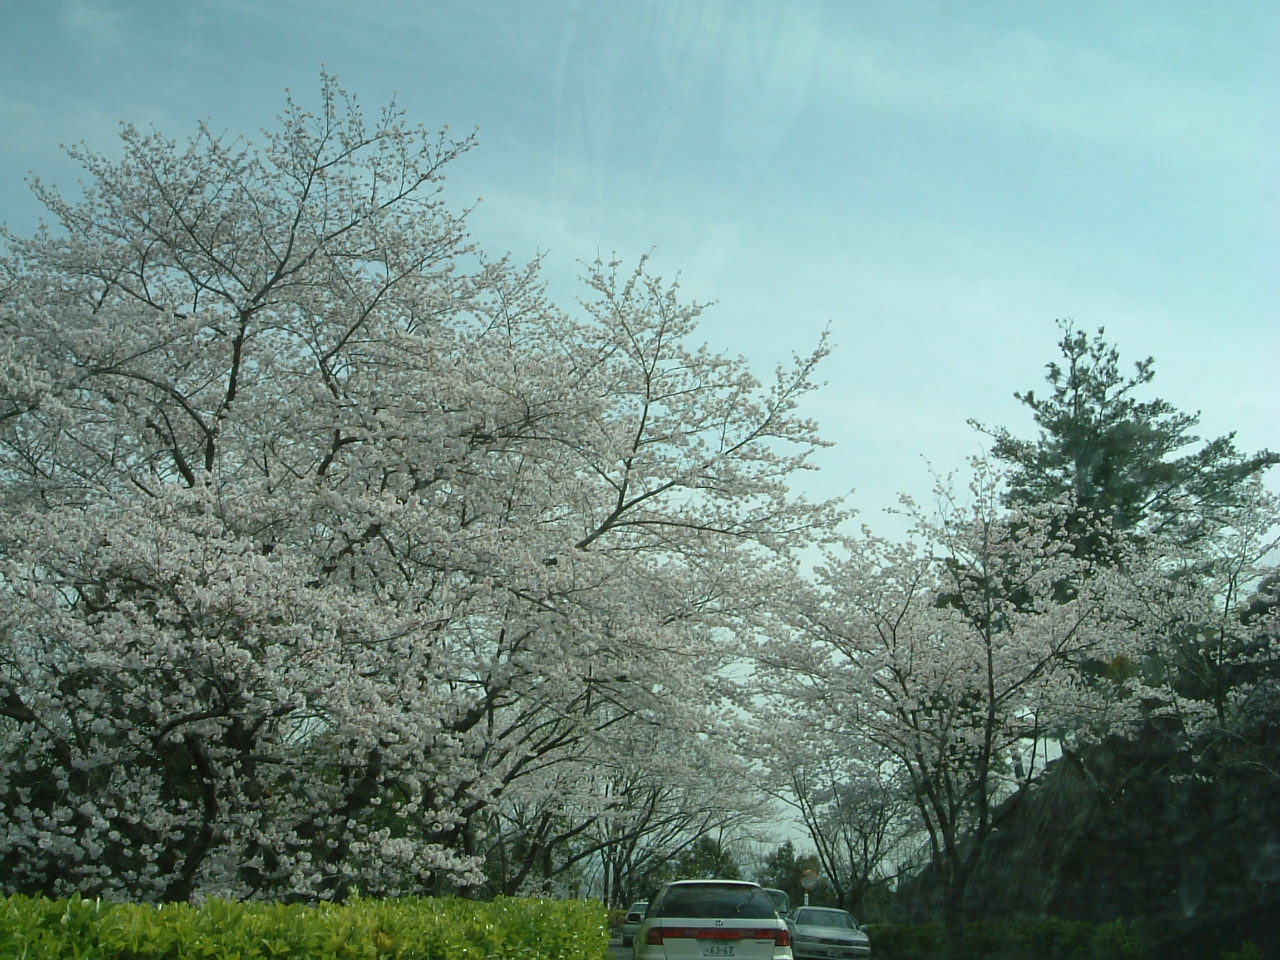 桜8